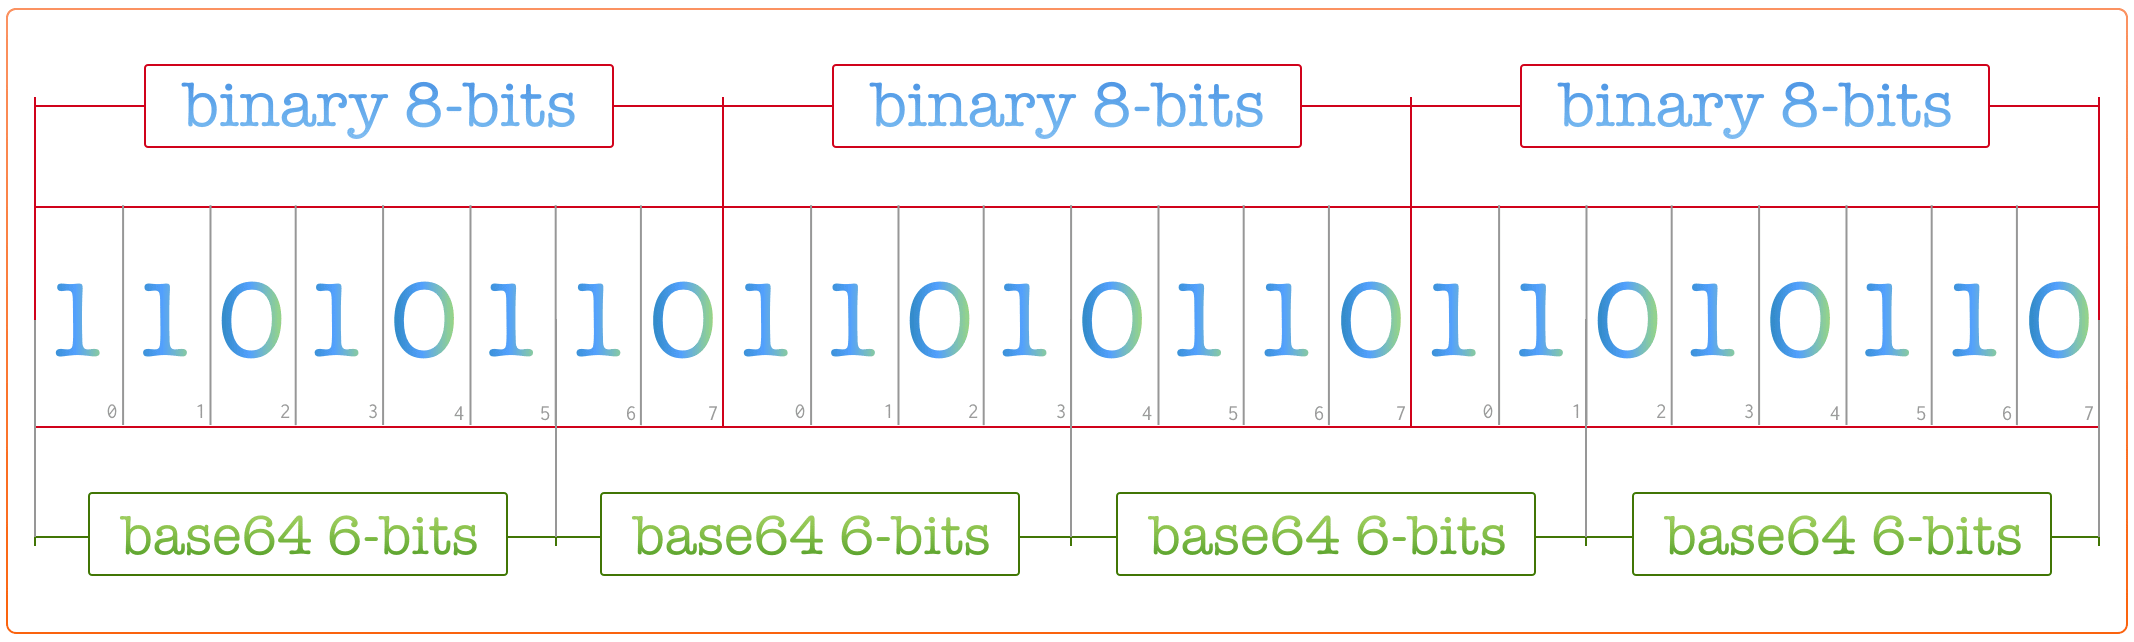 base64 encoding reduce size